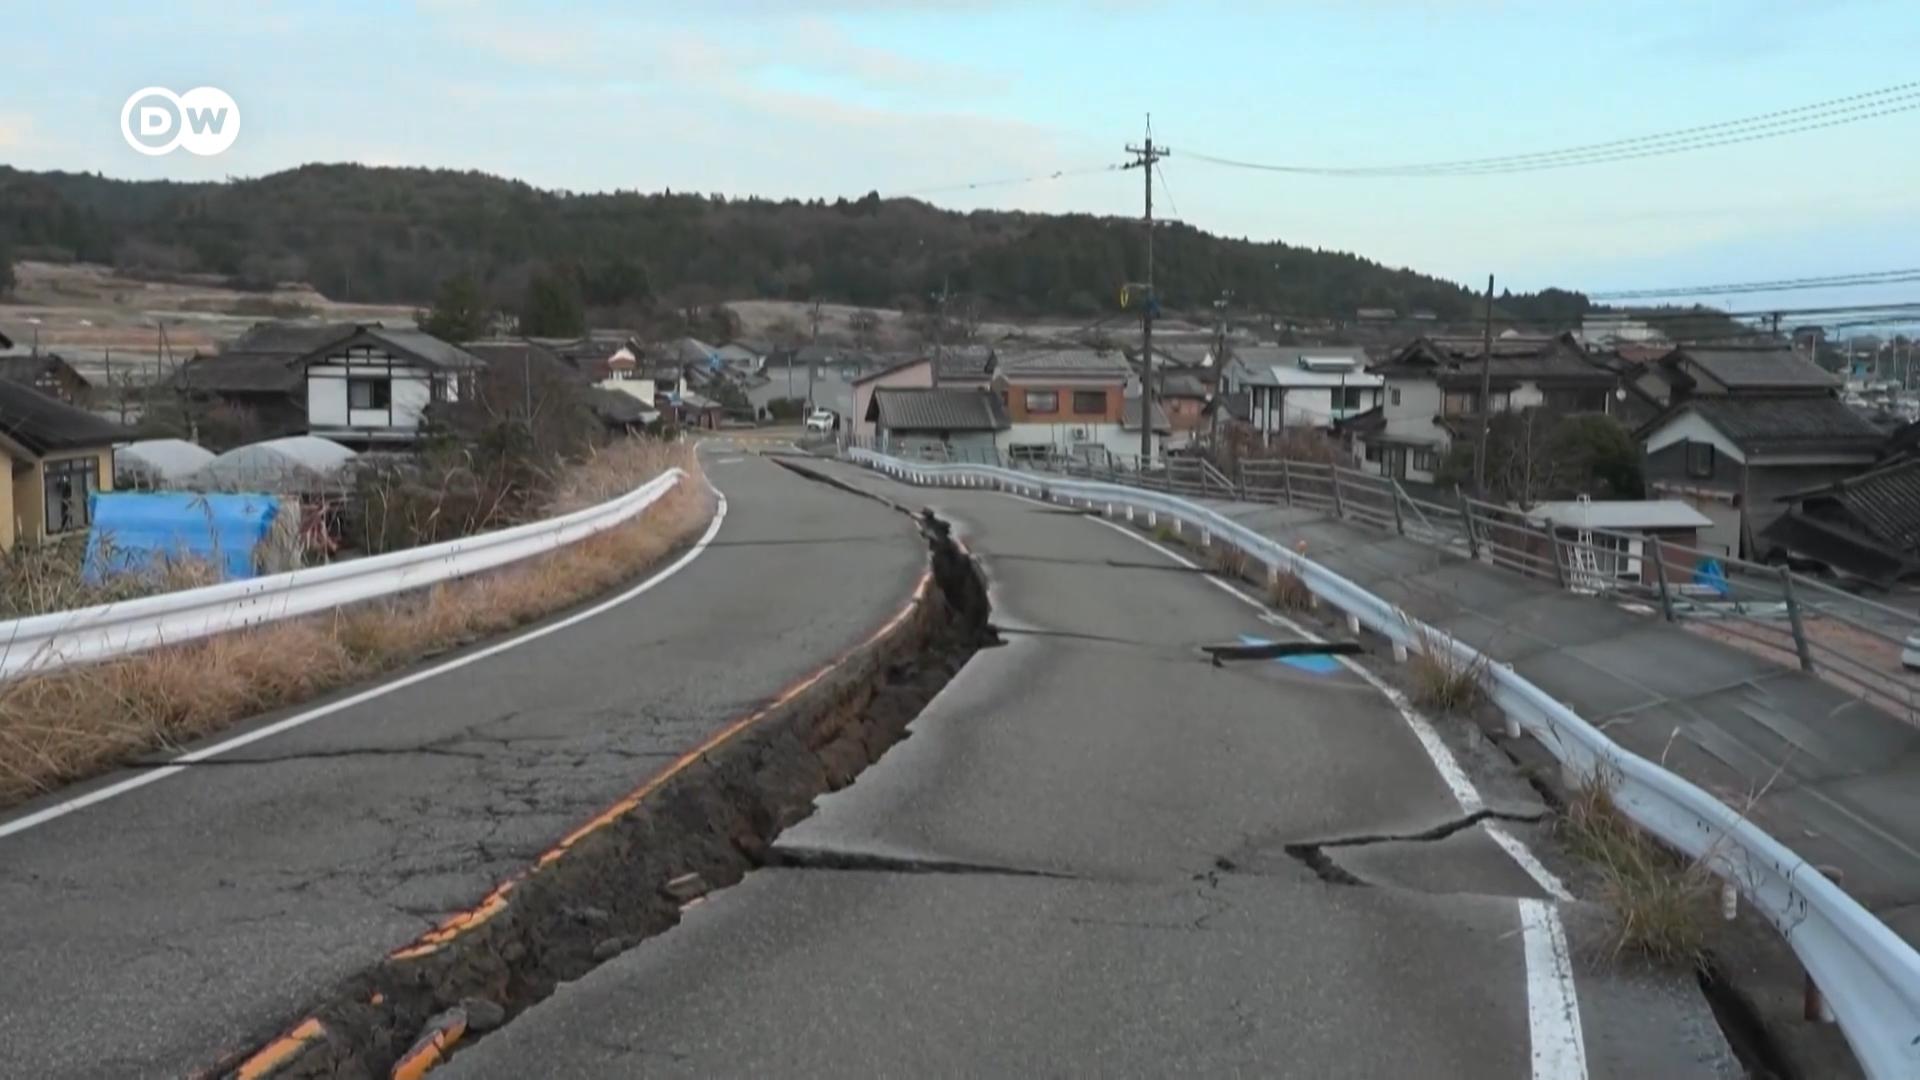 位于日本西海岸的石川县在元旦当天遭遇大地震，当局证实已造成房屋道路损坏，以及至少48人死亡，预计此数字还将继续上升。近期可能会有强烈余震，日本首相形容营救幸存者是与时间比赛。